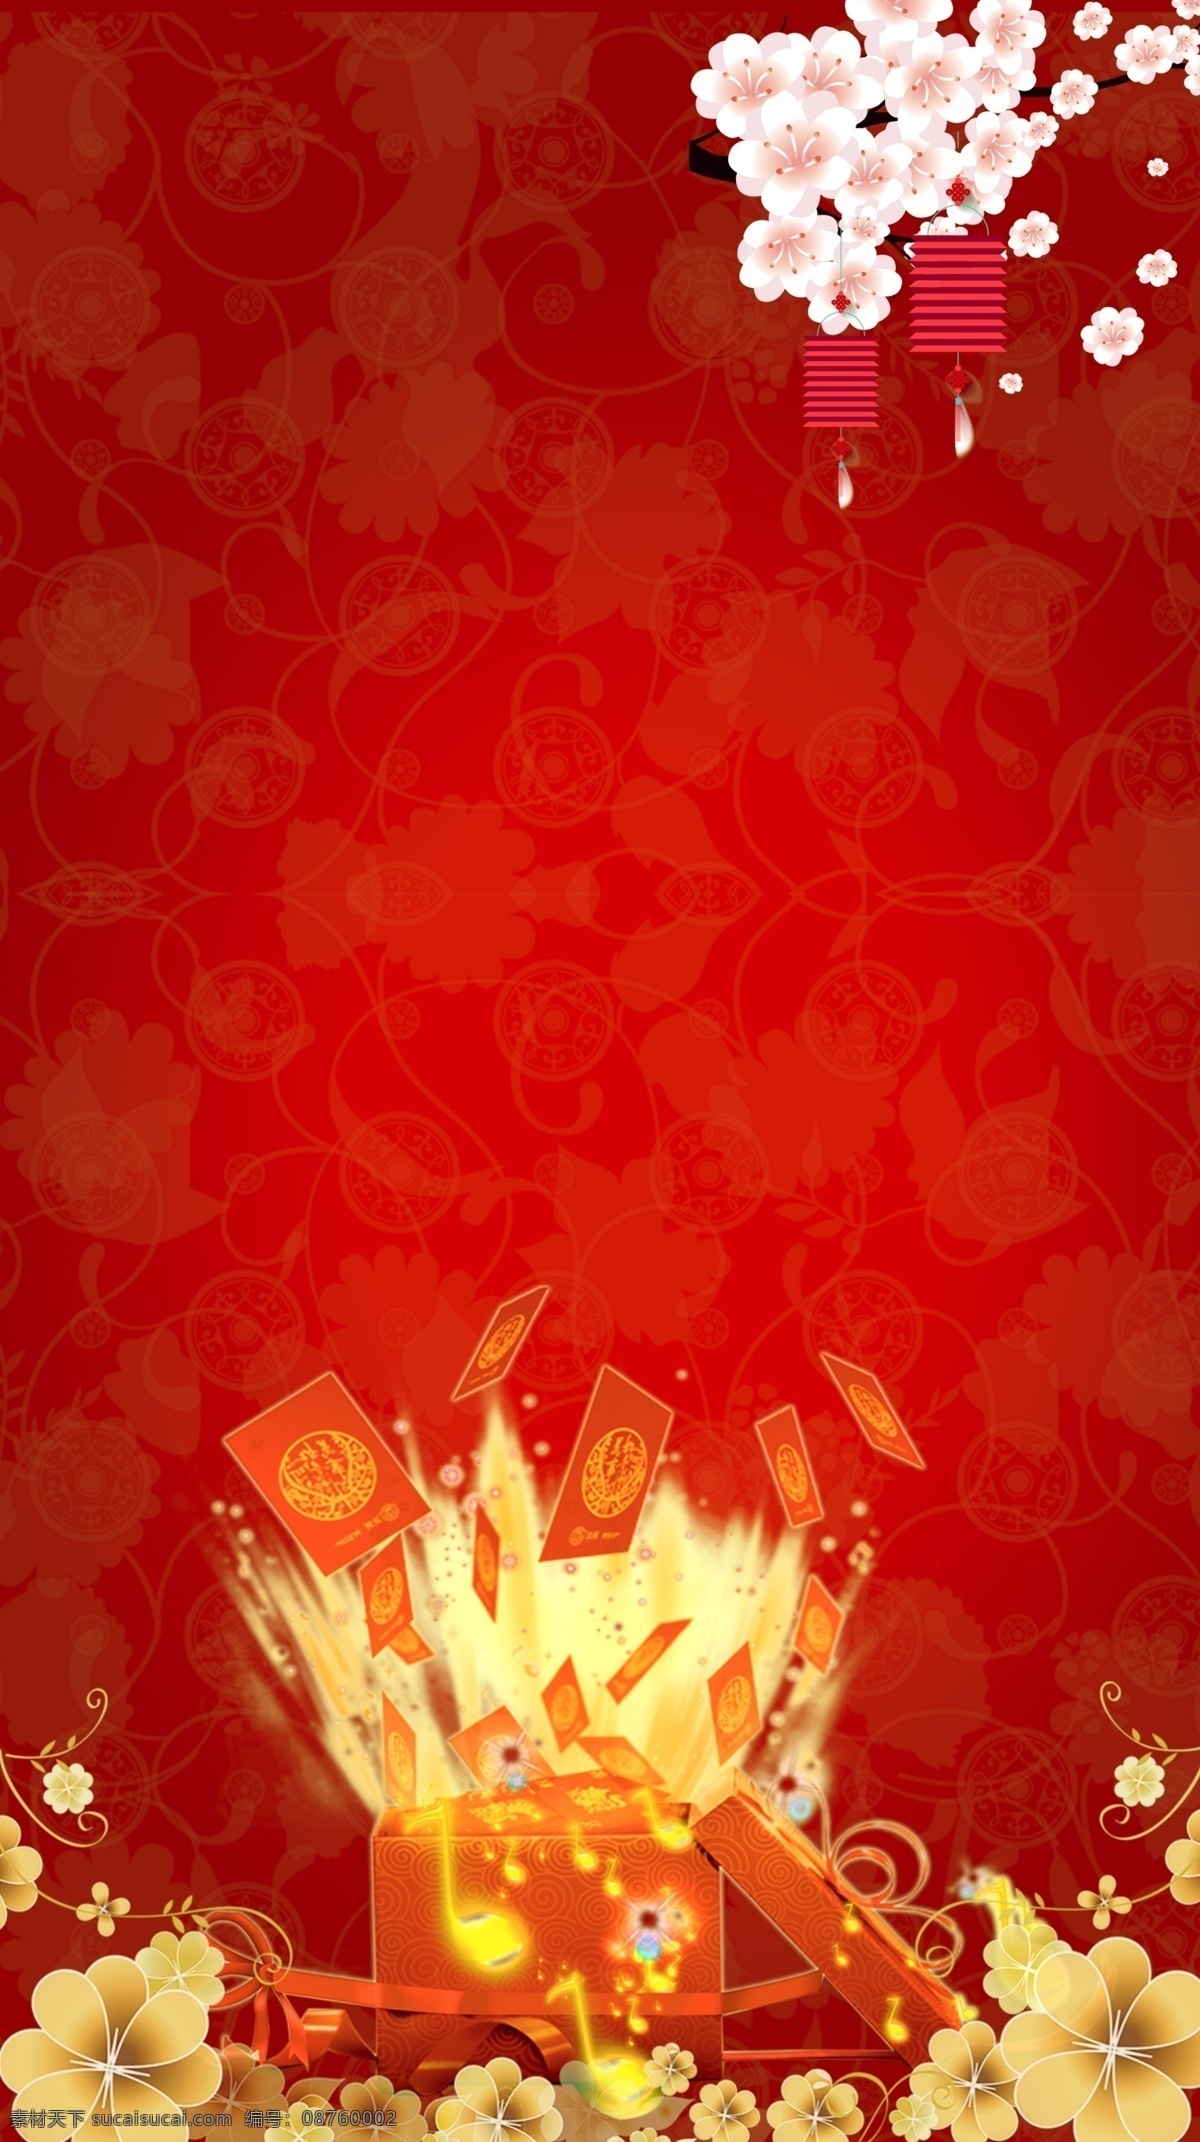 中国 红 h5 背景 地产 中国风 背景图 过年 春节 红包 中国素材 梅花